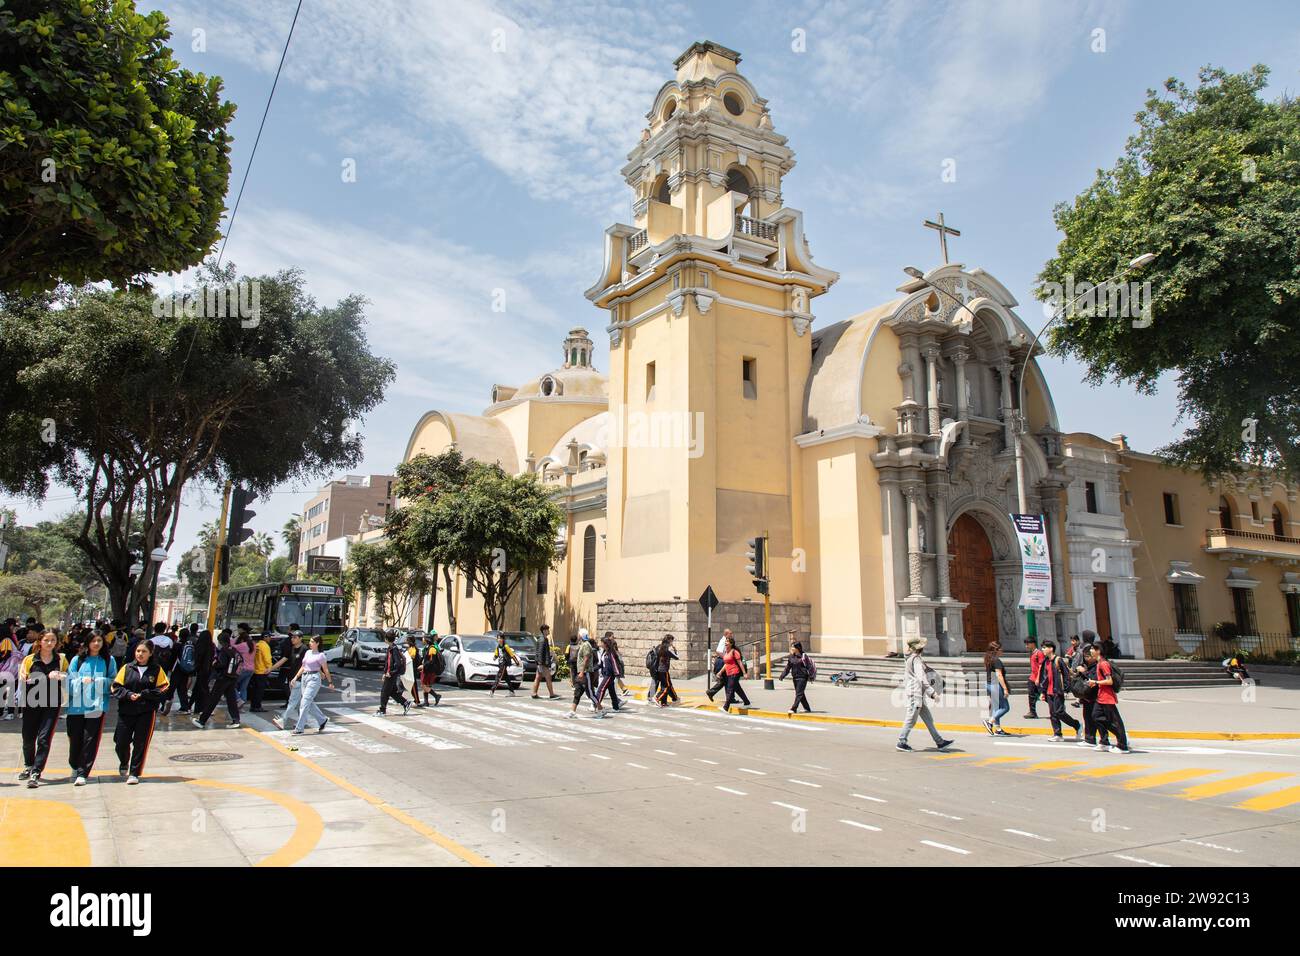 Cathedral, El Barranco, Lima, Peru Stock Photo